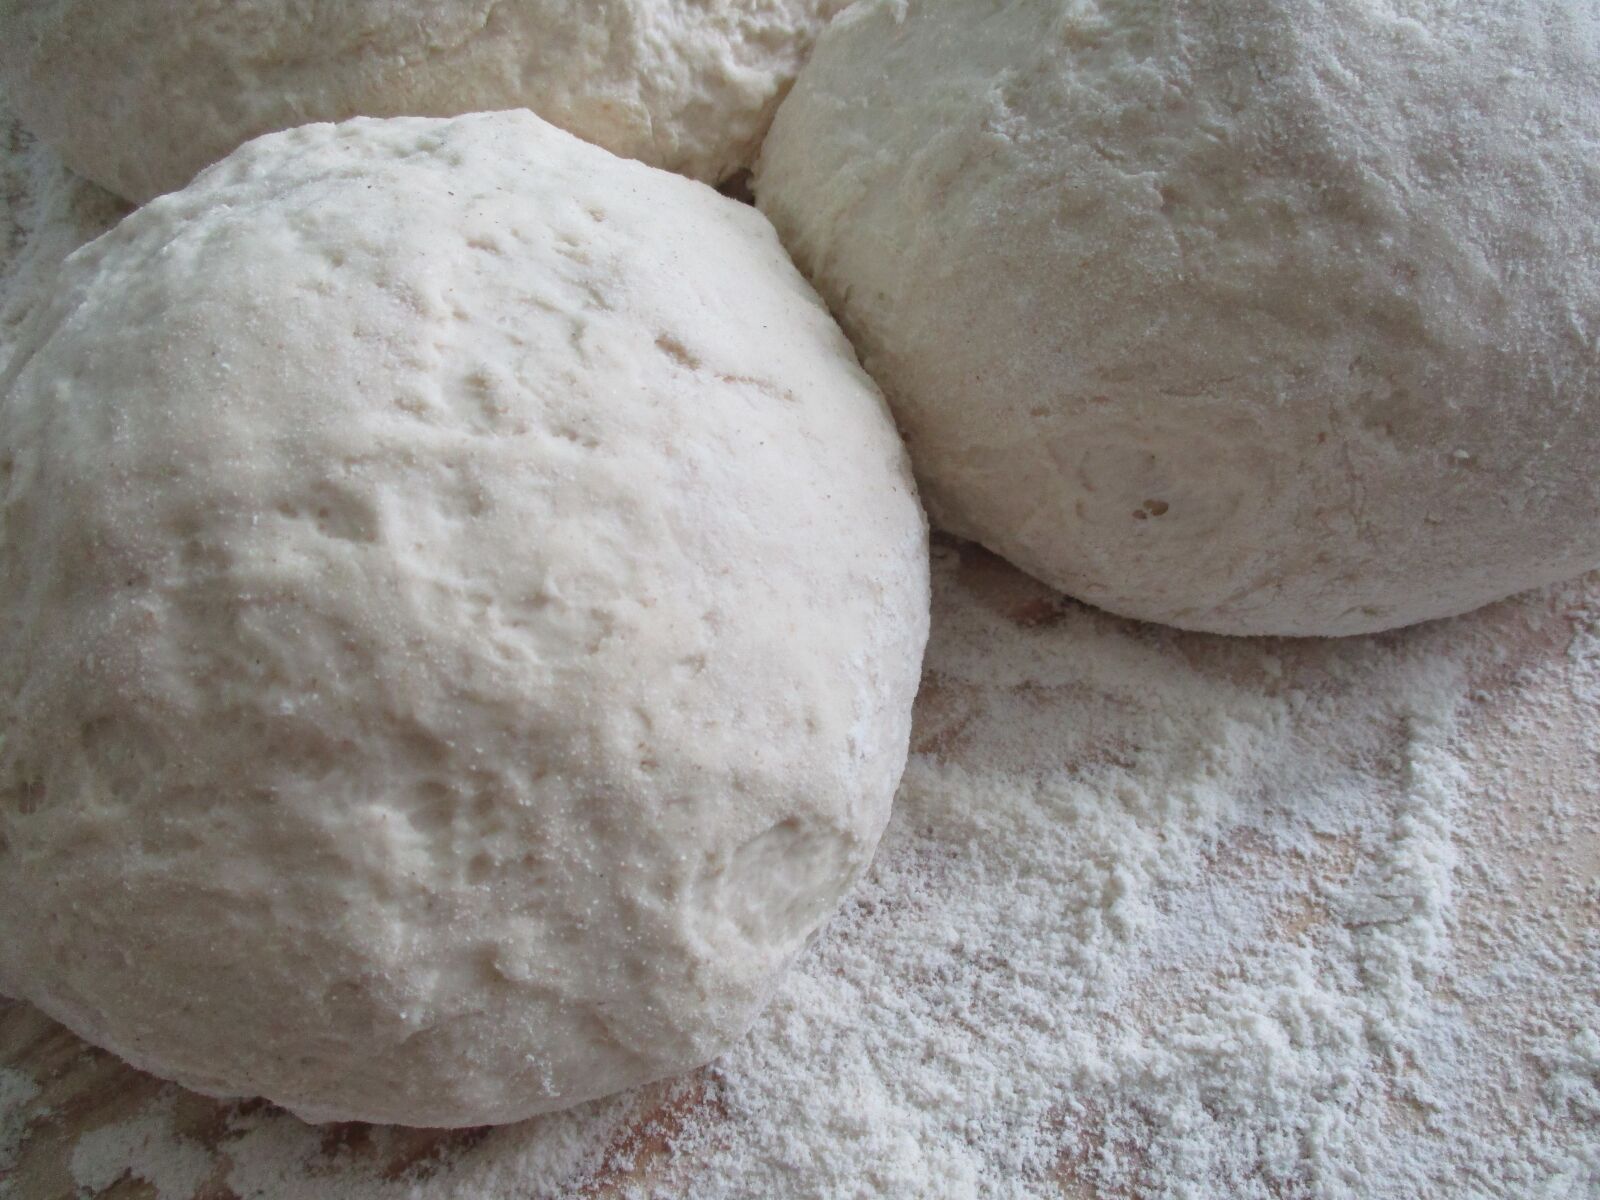 Canon IXUS 185 sample photo. Flour, dough, bread photography